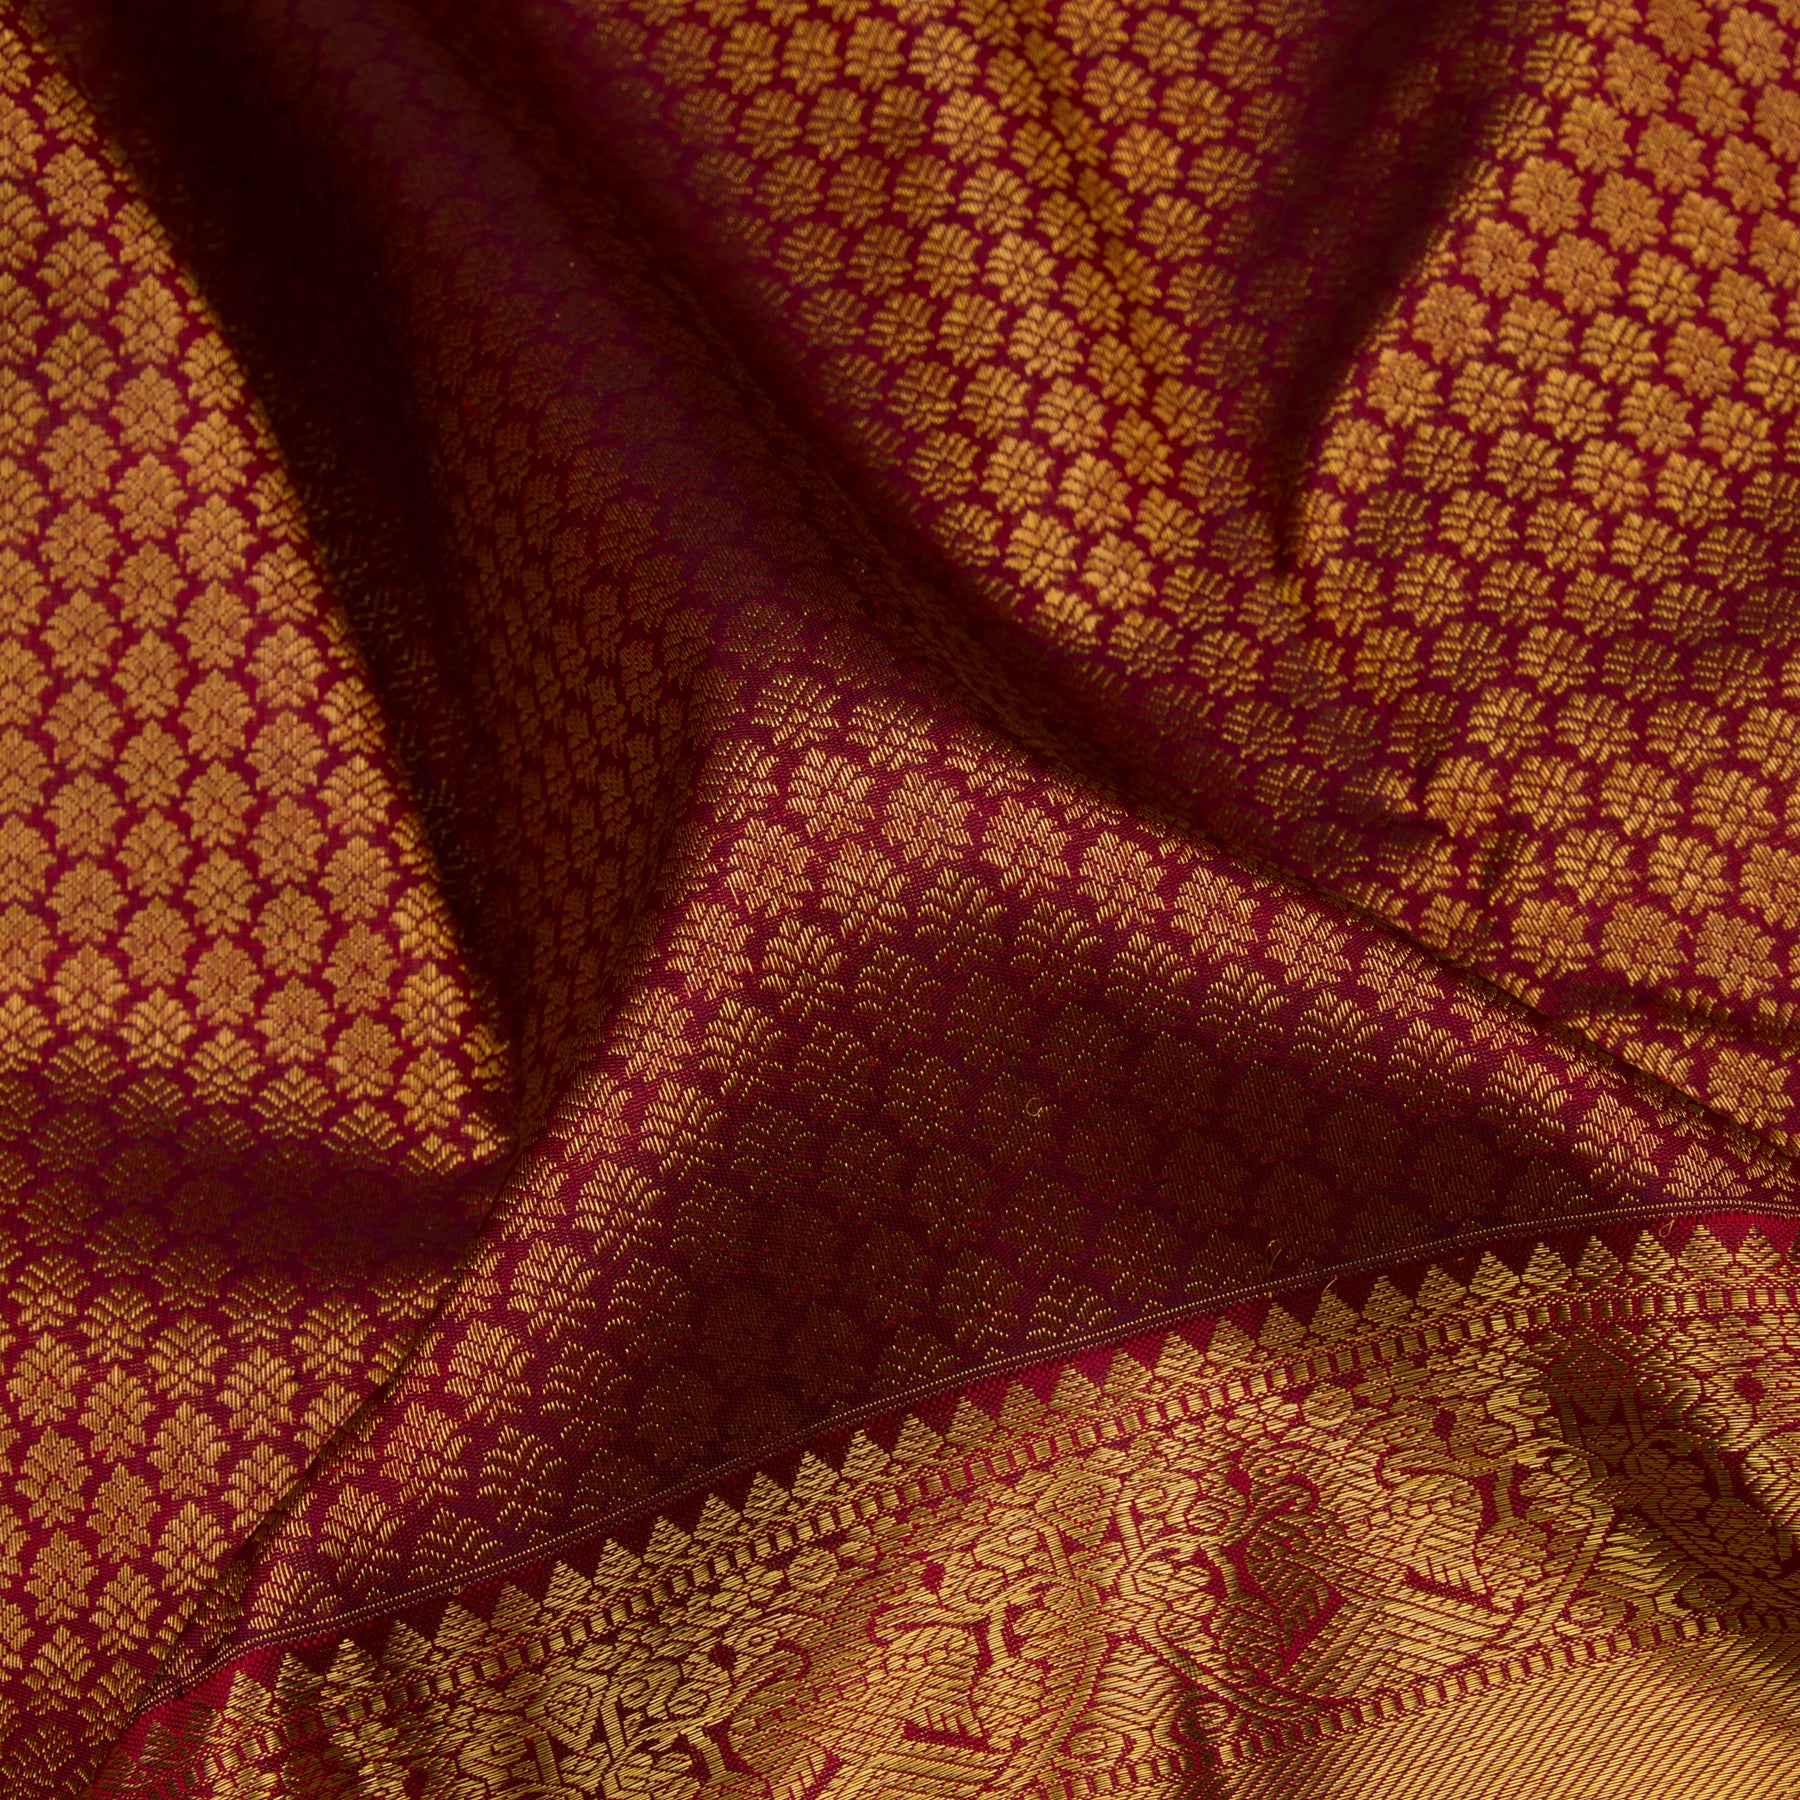 Kanakavalli Kanjivaram Silk Sari 23-110-HS001-02173 - Fabric View